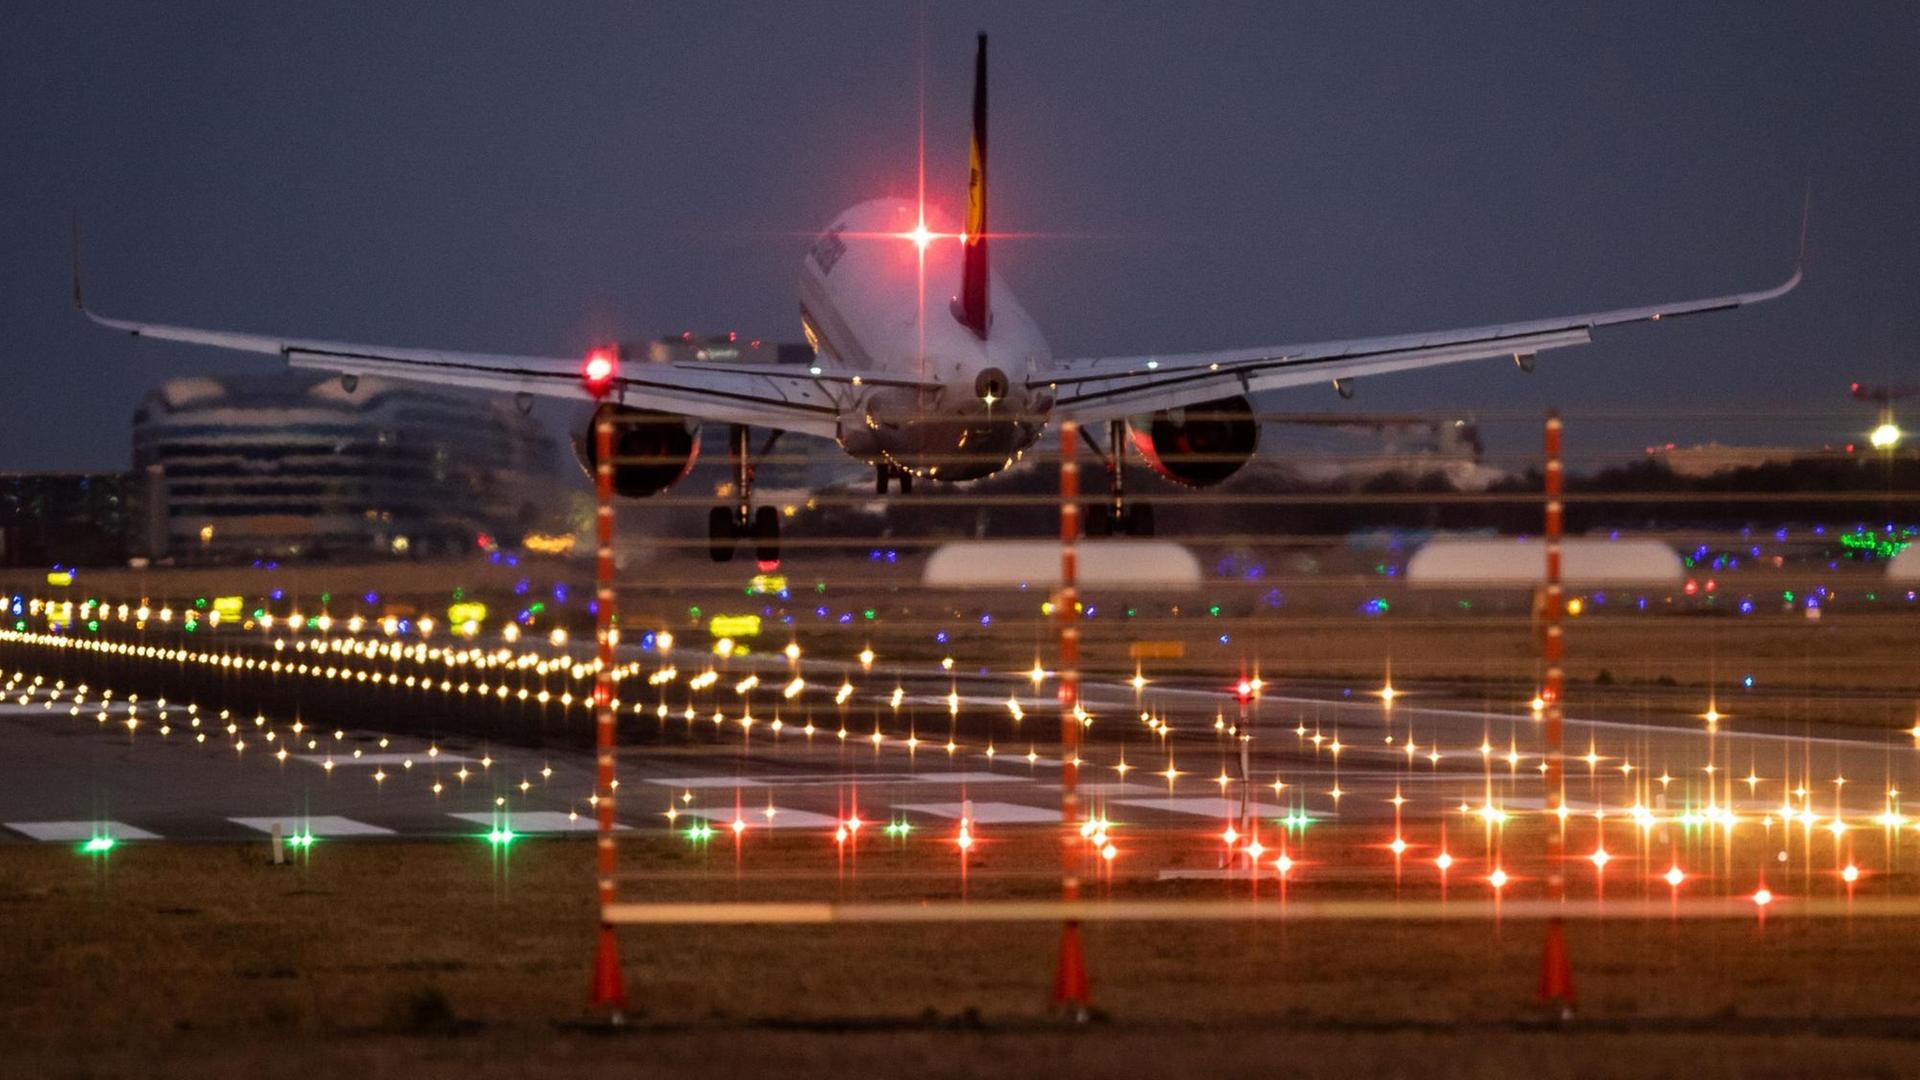 Man sieht das Flugzeug von hinten und im Hintergrund Flughafengebäude. Viele bunte Lichter leuchten in der Dunkelheit.